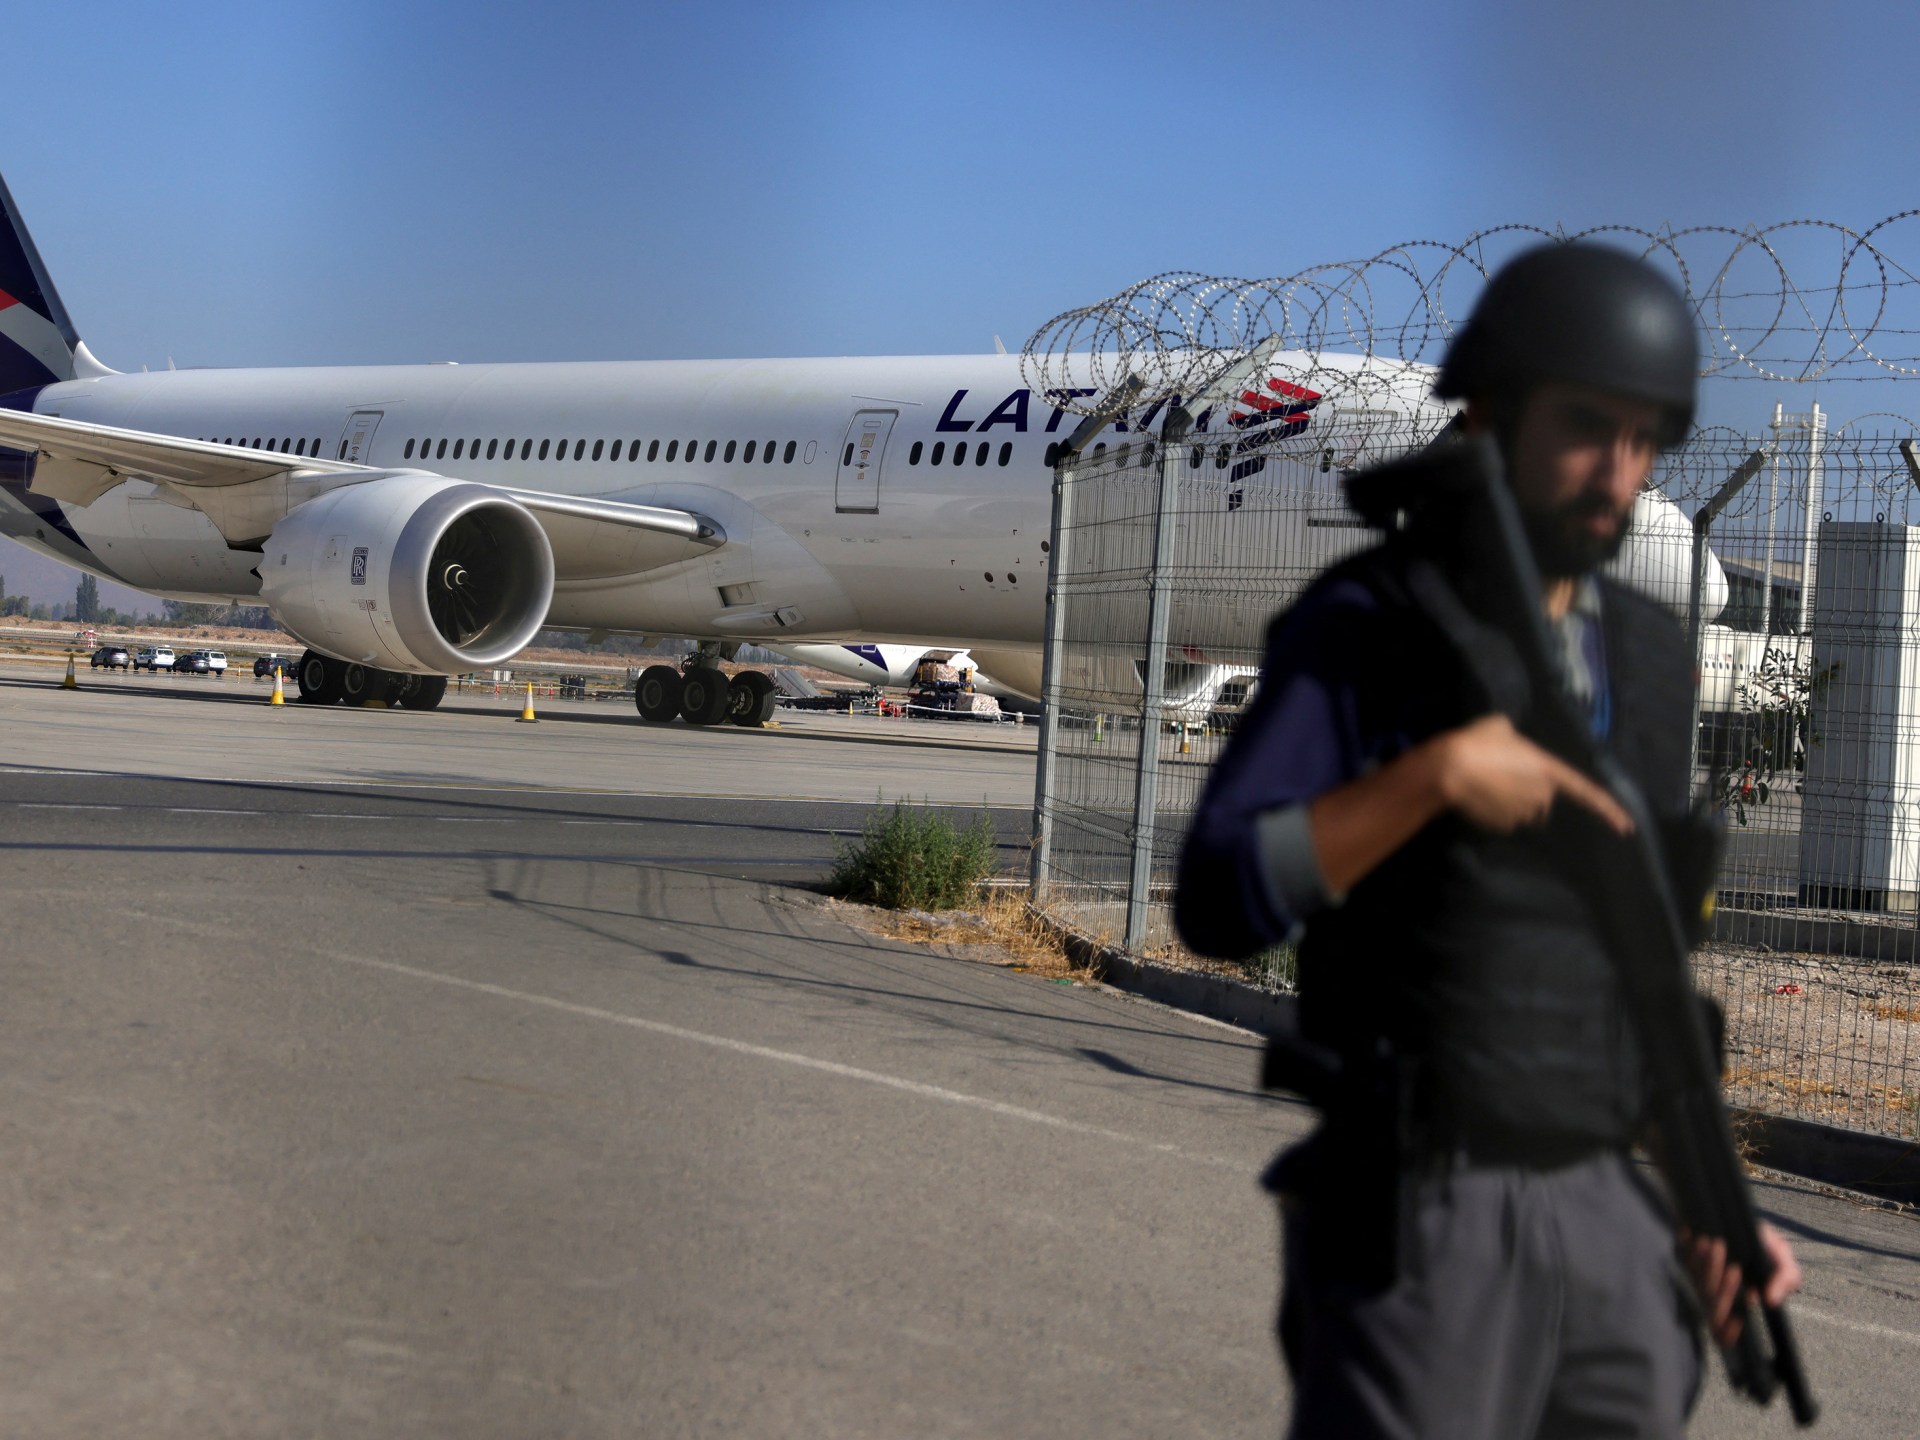 칠레 공항에서 3,250만 달러를 훔치려다가 실패하여 2명 사망 |  범죄 뉴스